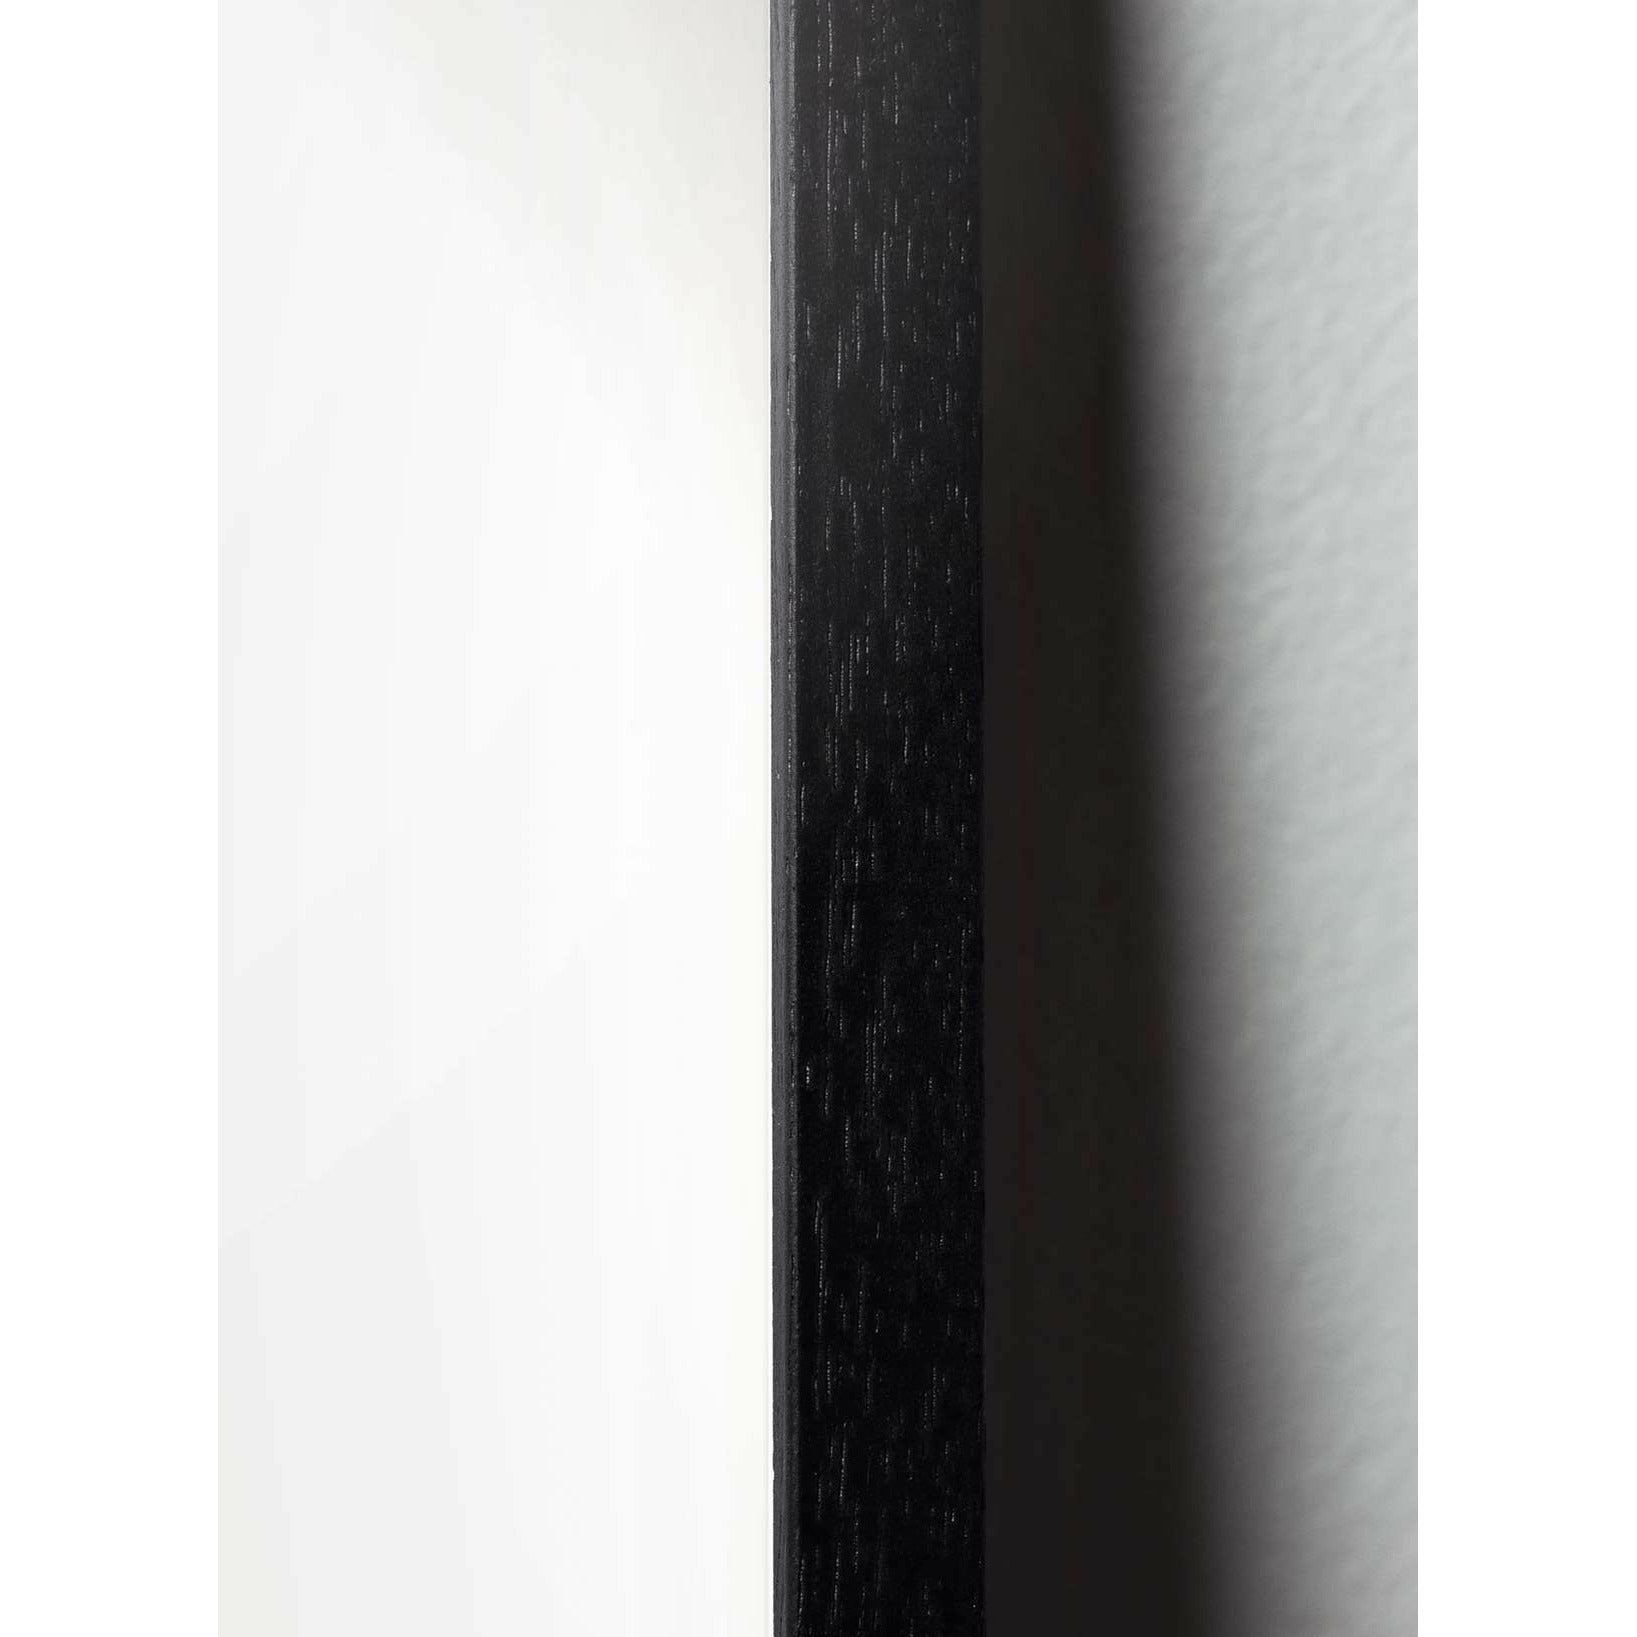 Brainchild Teddy Bear Classic -Poster, Rahmen in schwarz lackiertem Holz 30x40 cm, sandfarbener Hintergrund